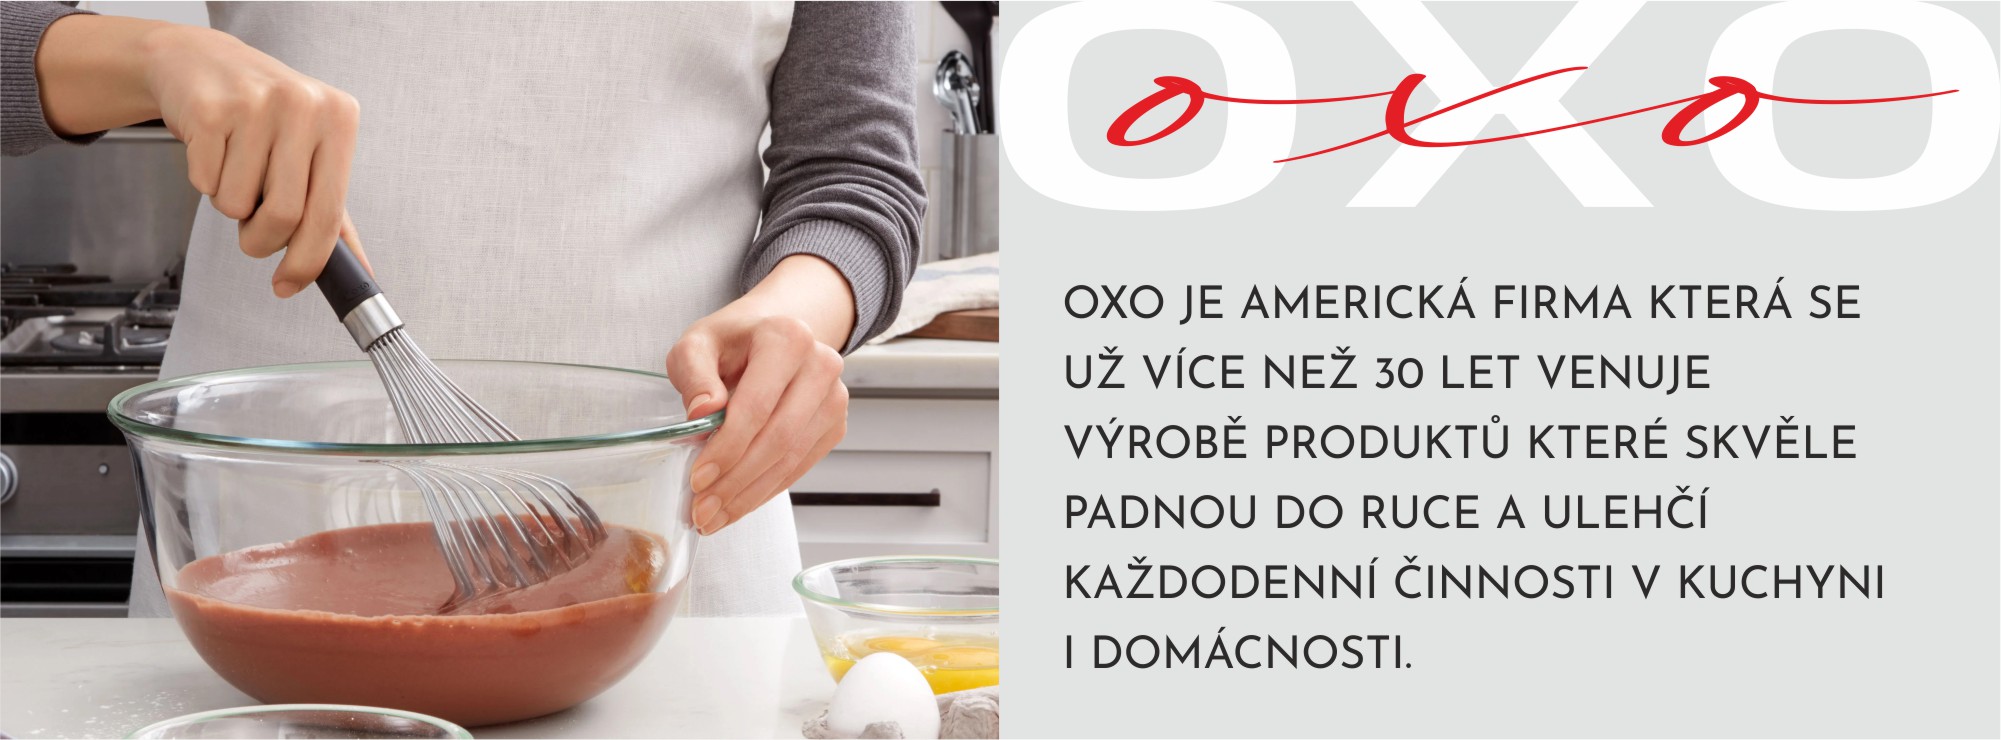 OXO-info-metlička-CZ